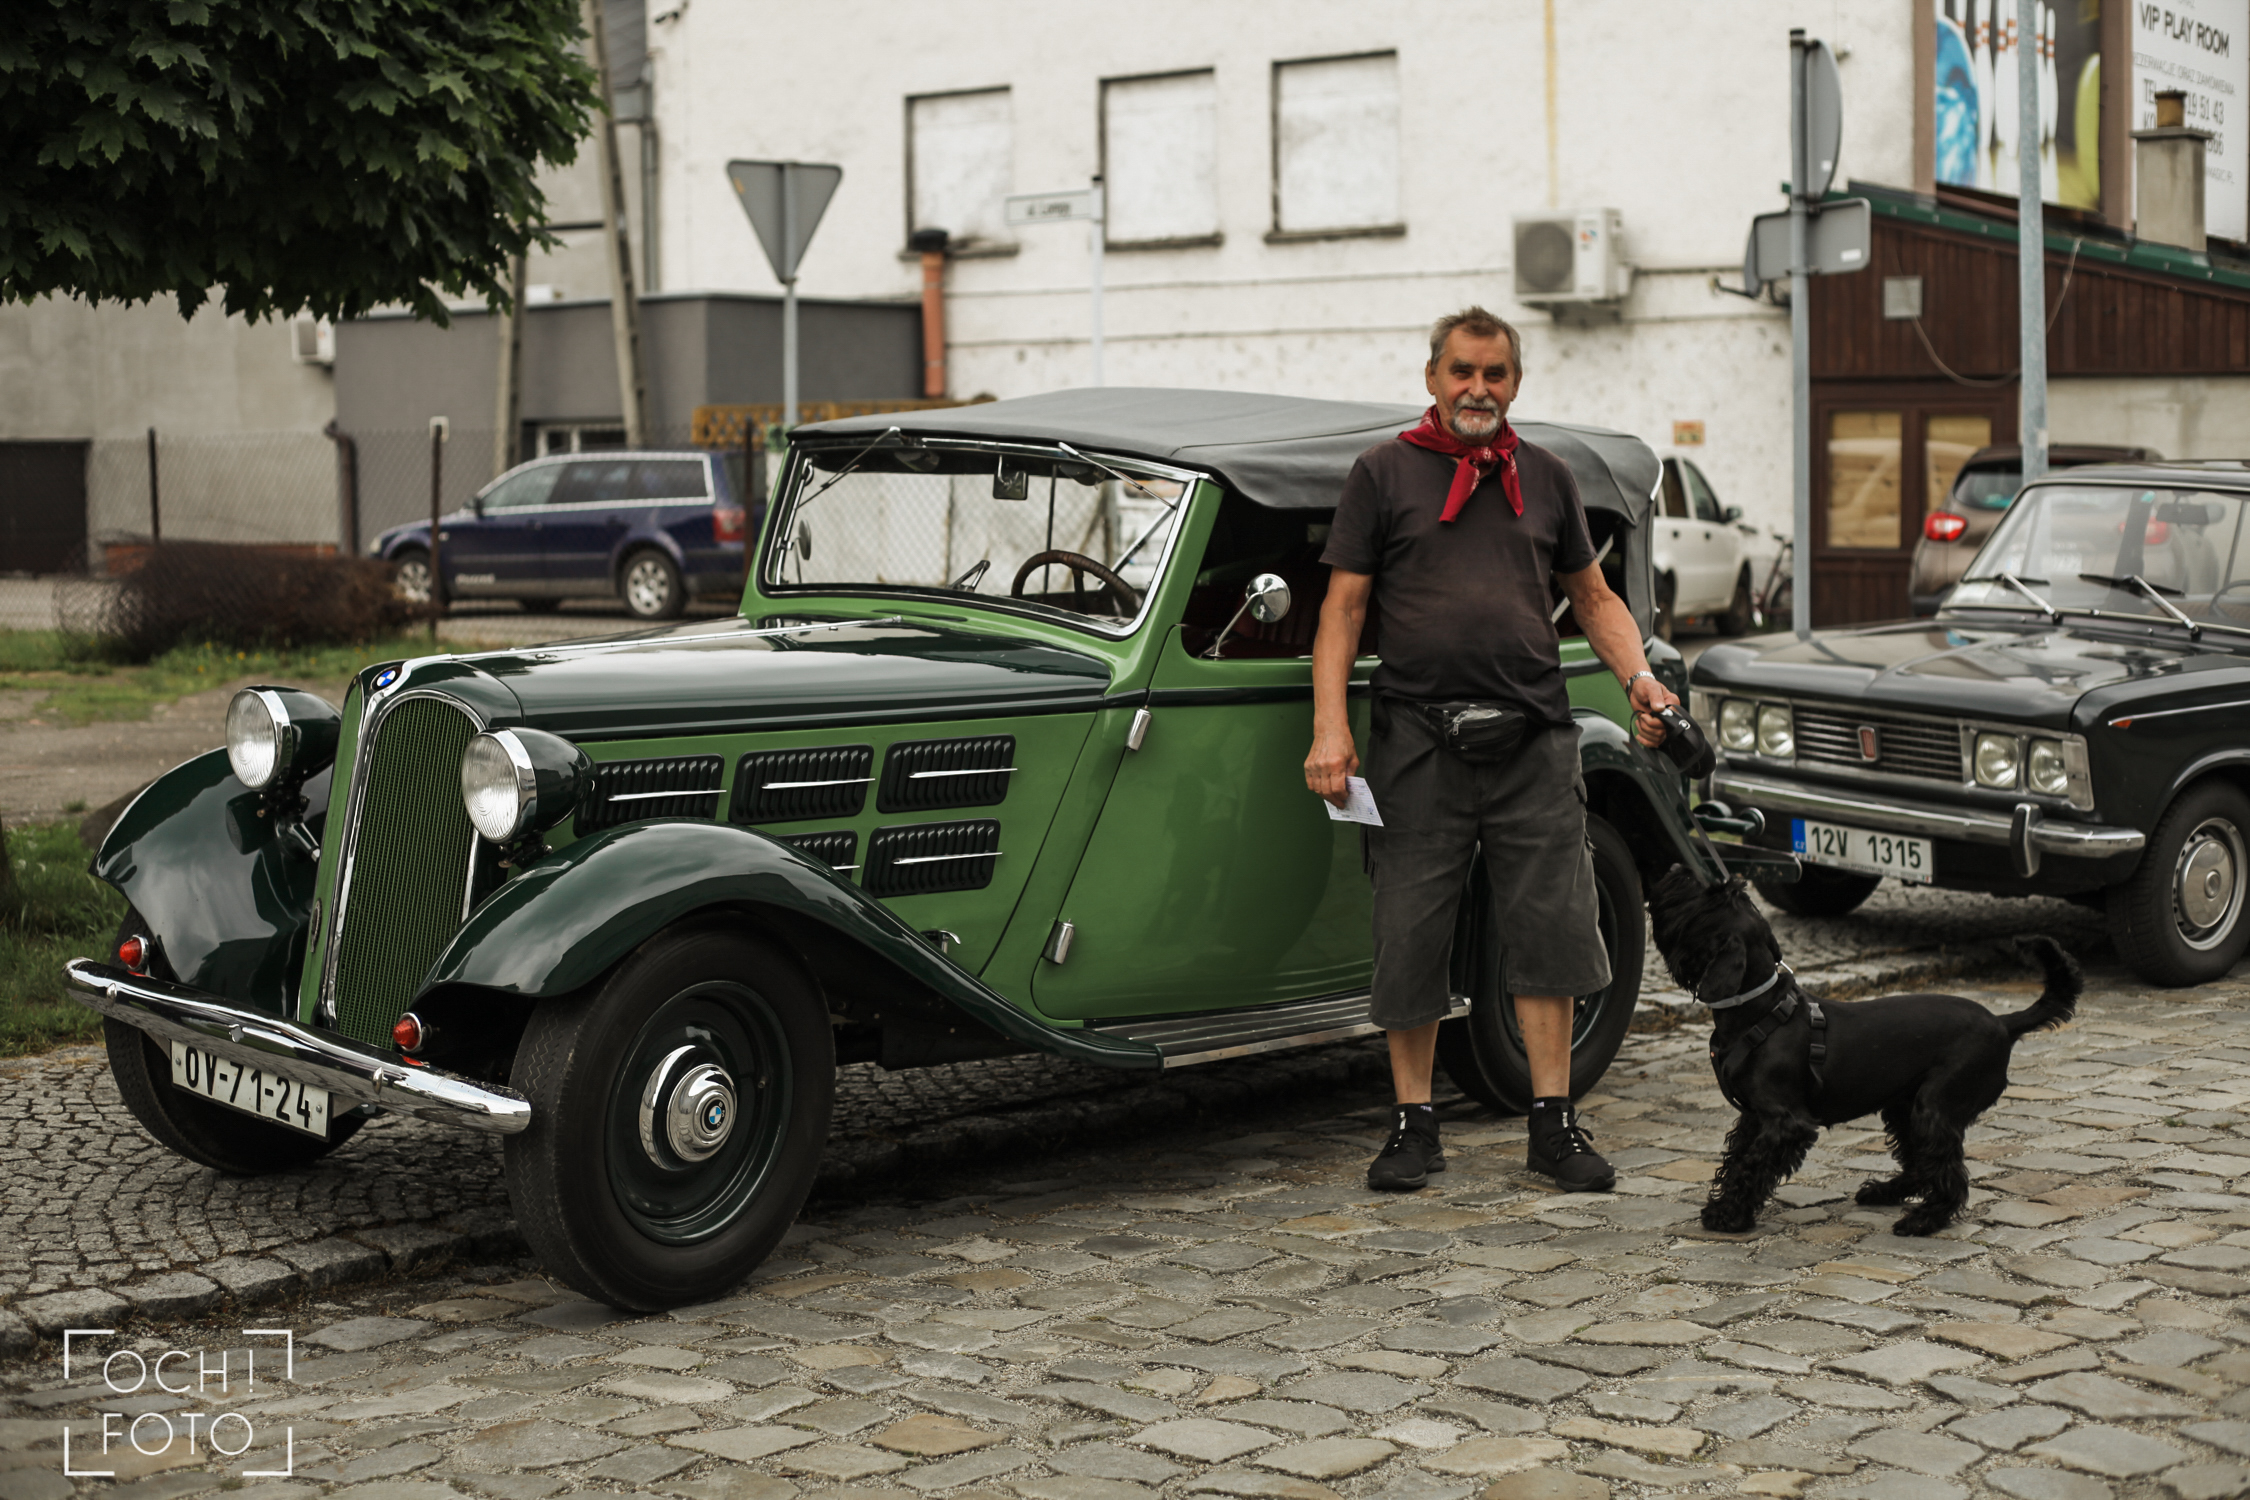 Jiří Kološ z Ostrawy jest szczęśliwym posiadaczem tego BMW 315 z 1934 roku już od pięćdziesięciu lat. Zapytany o to, jak często nim jeździ odpowiada „Jak nie leżę pod nim, to jeżdżę!”.